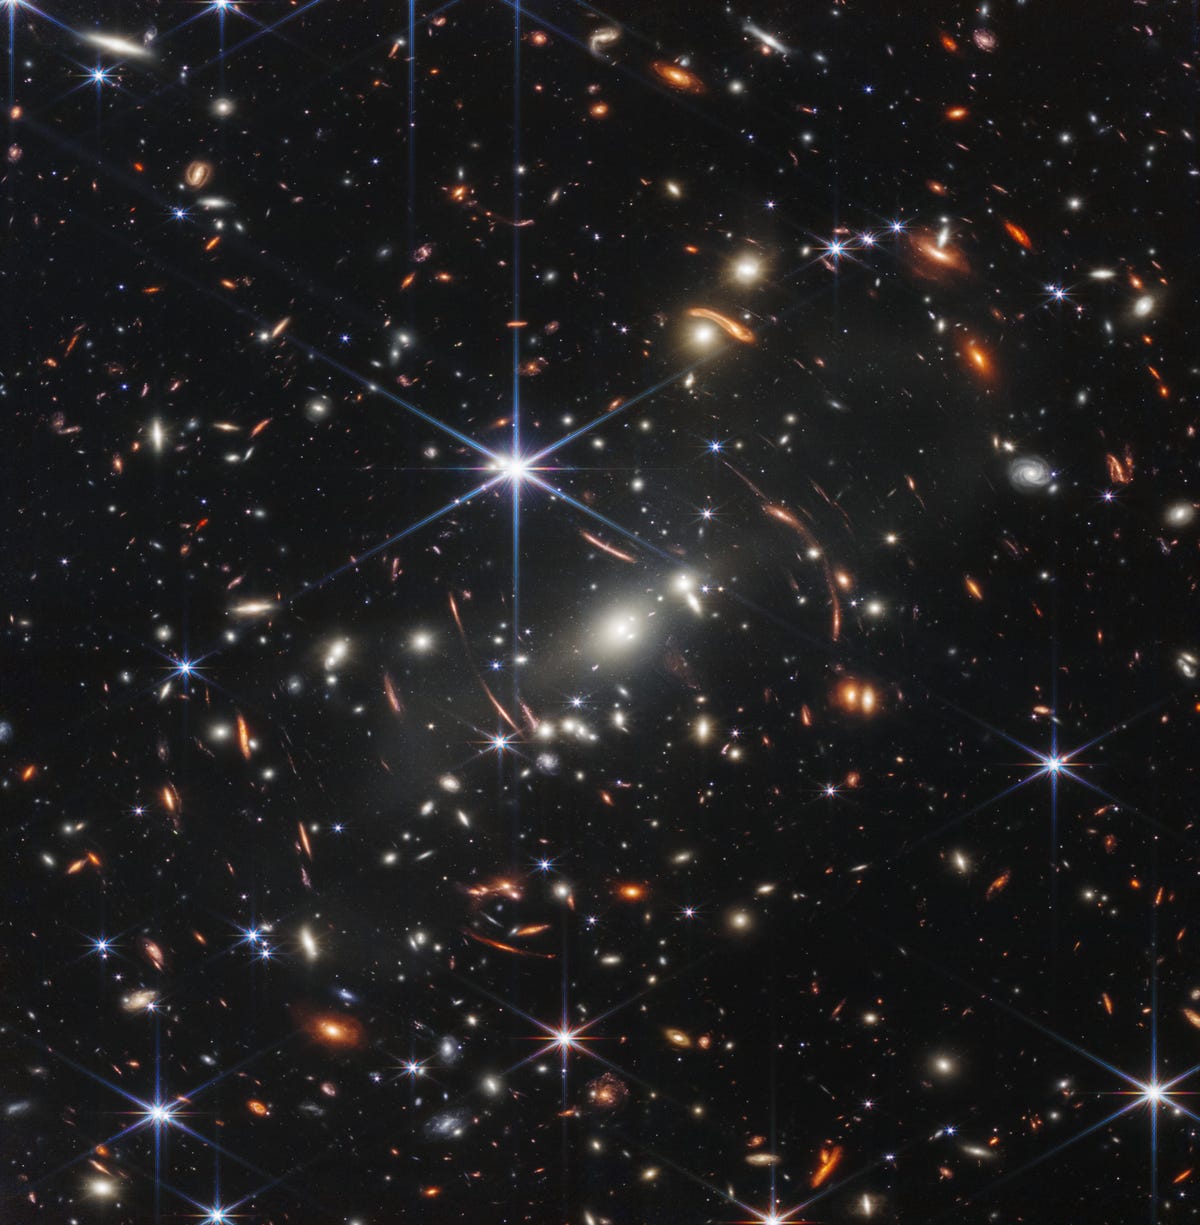 Поле тысяч галактик на фоне темноты космоса с большой центральной синей шестиконечной звездой.